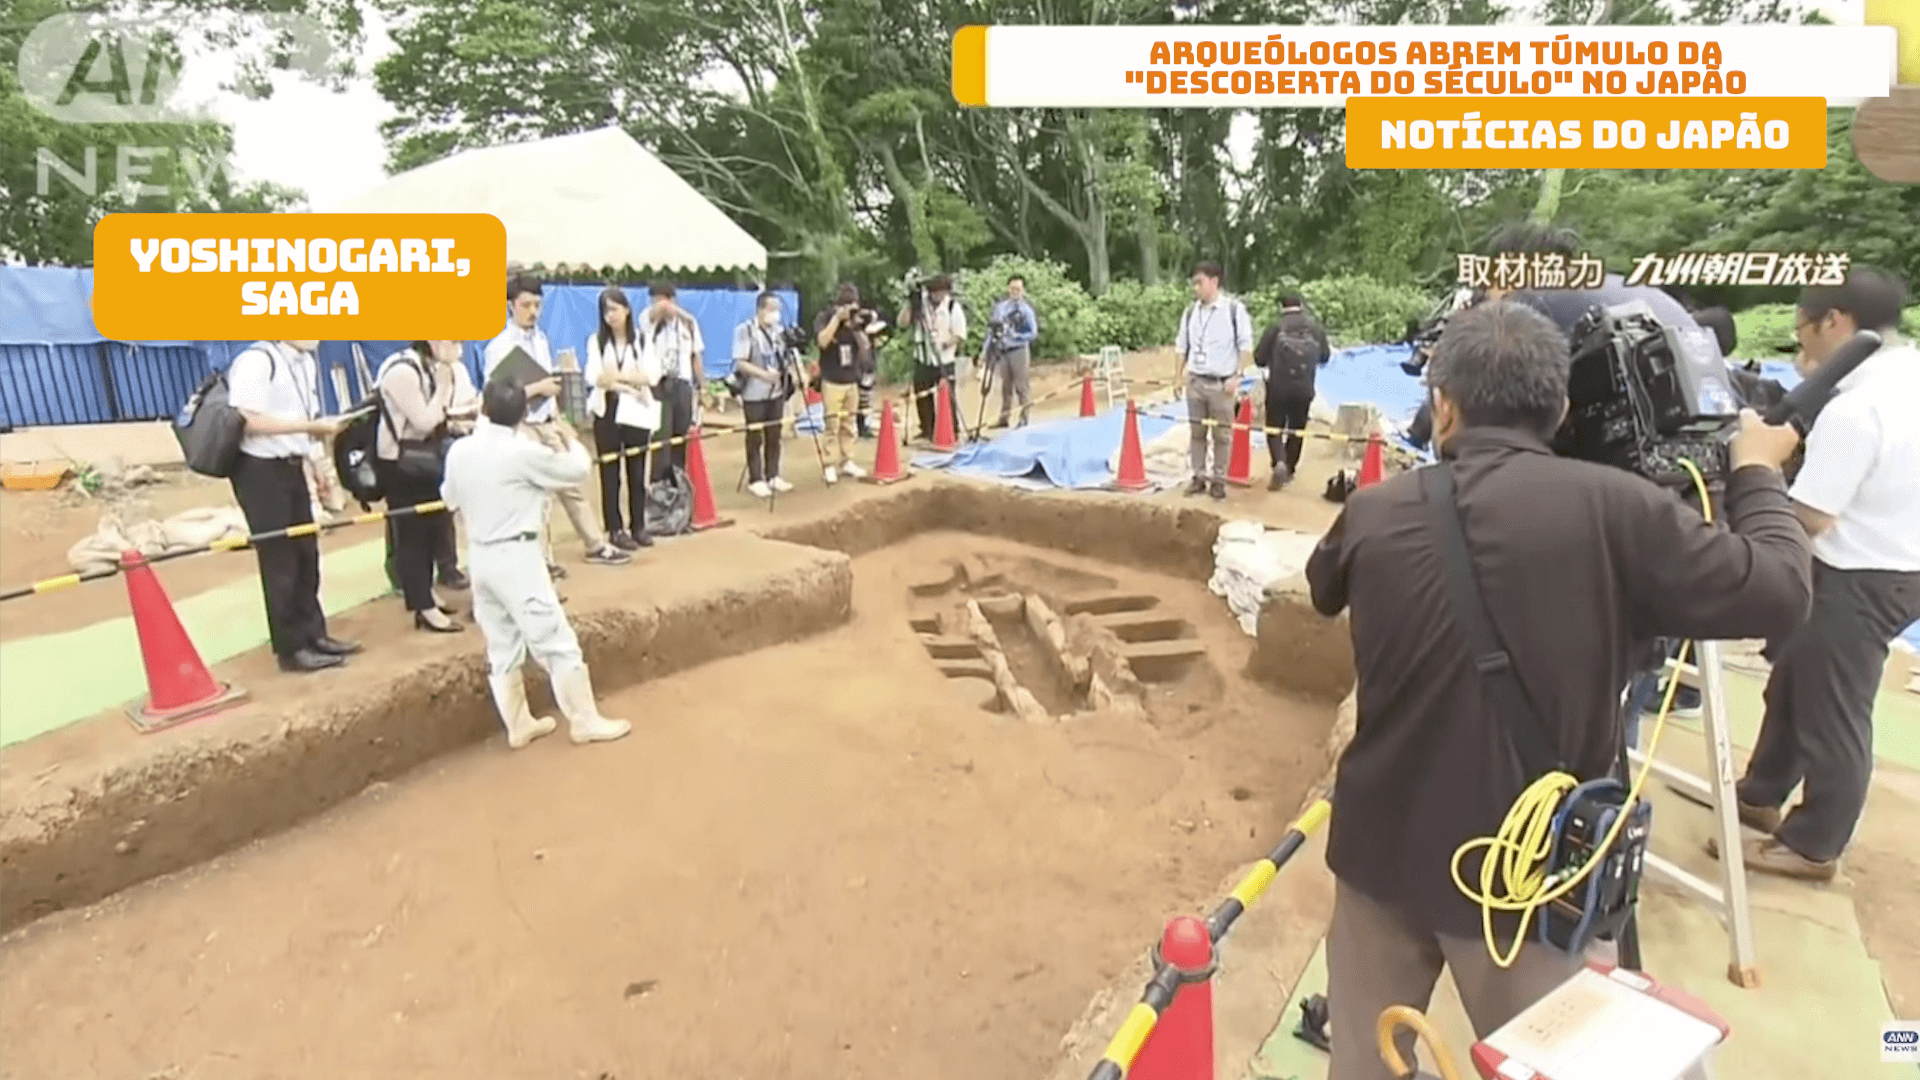 Arqueólogos abrem túmulo da “descoberta do século” no Japão